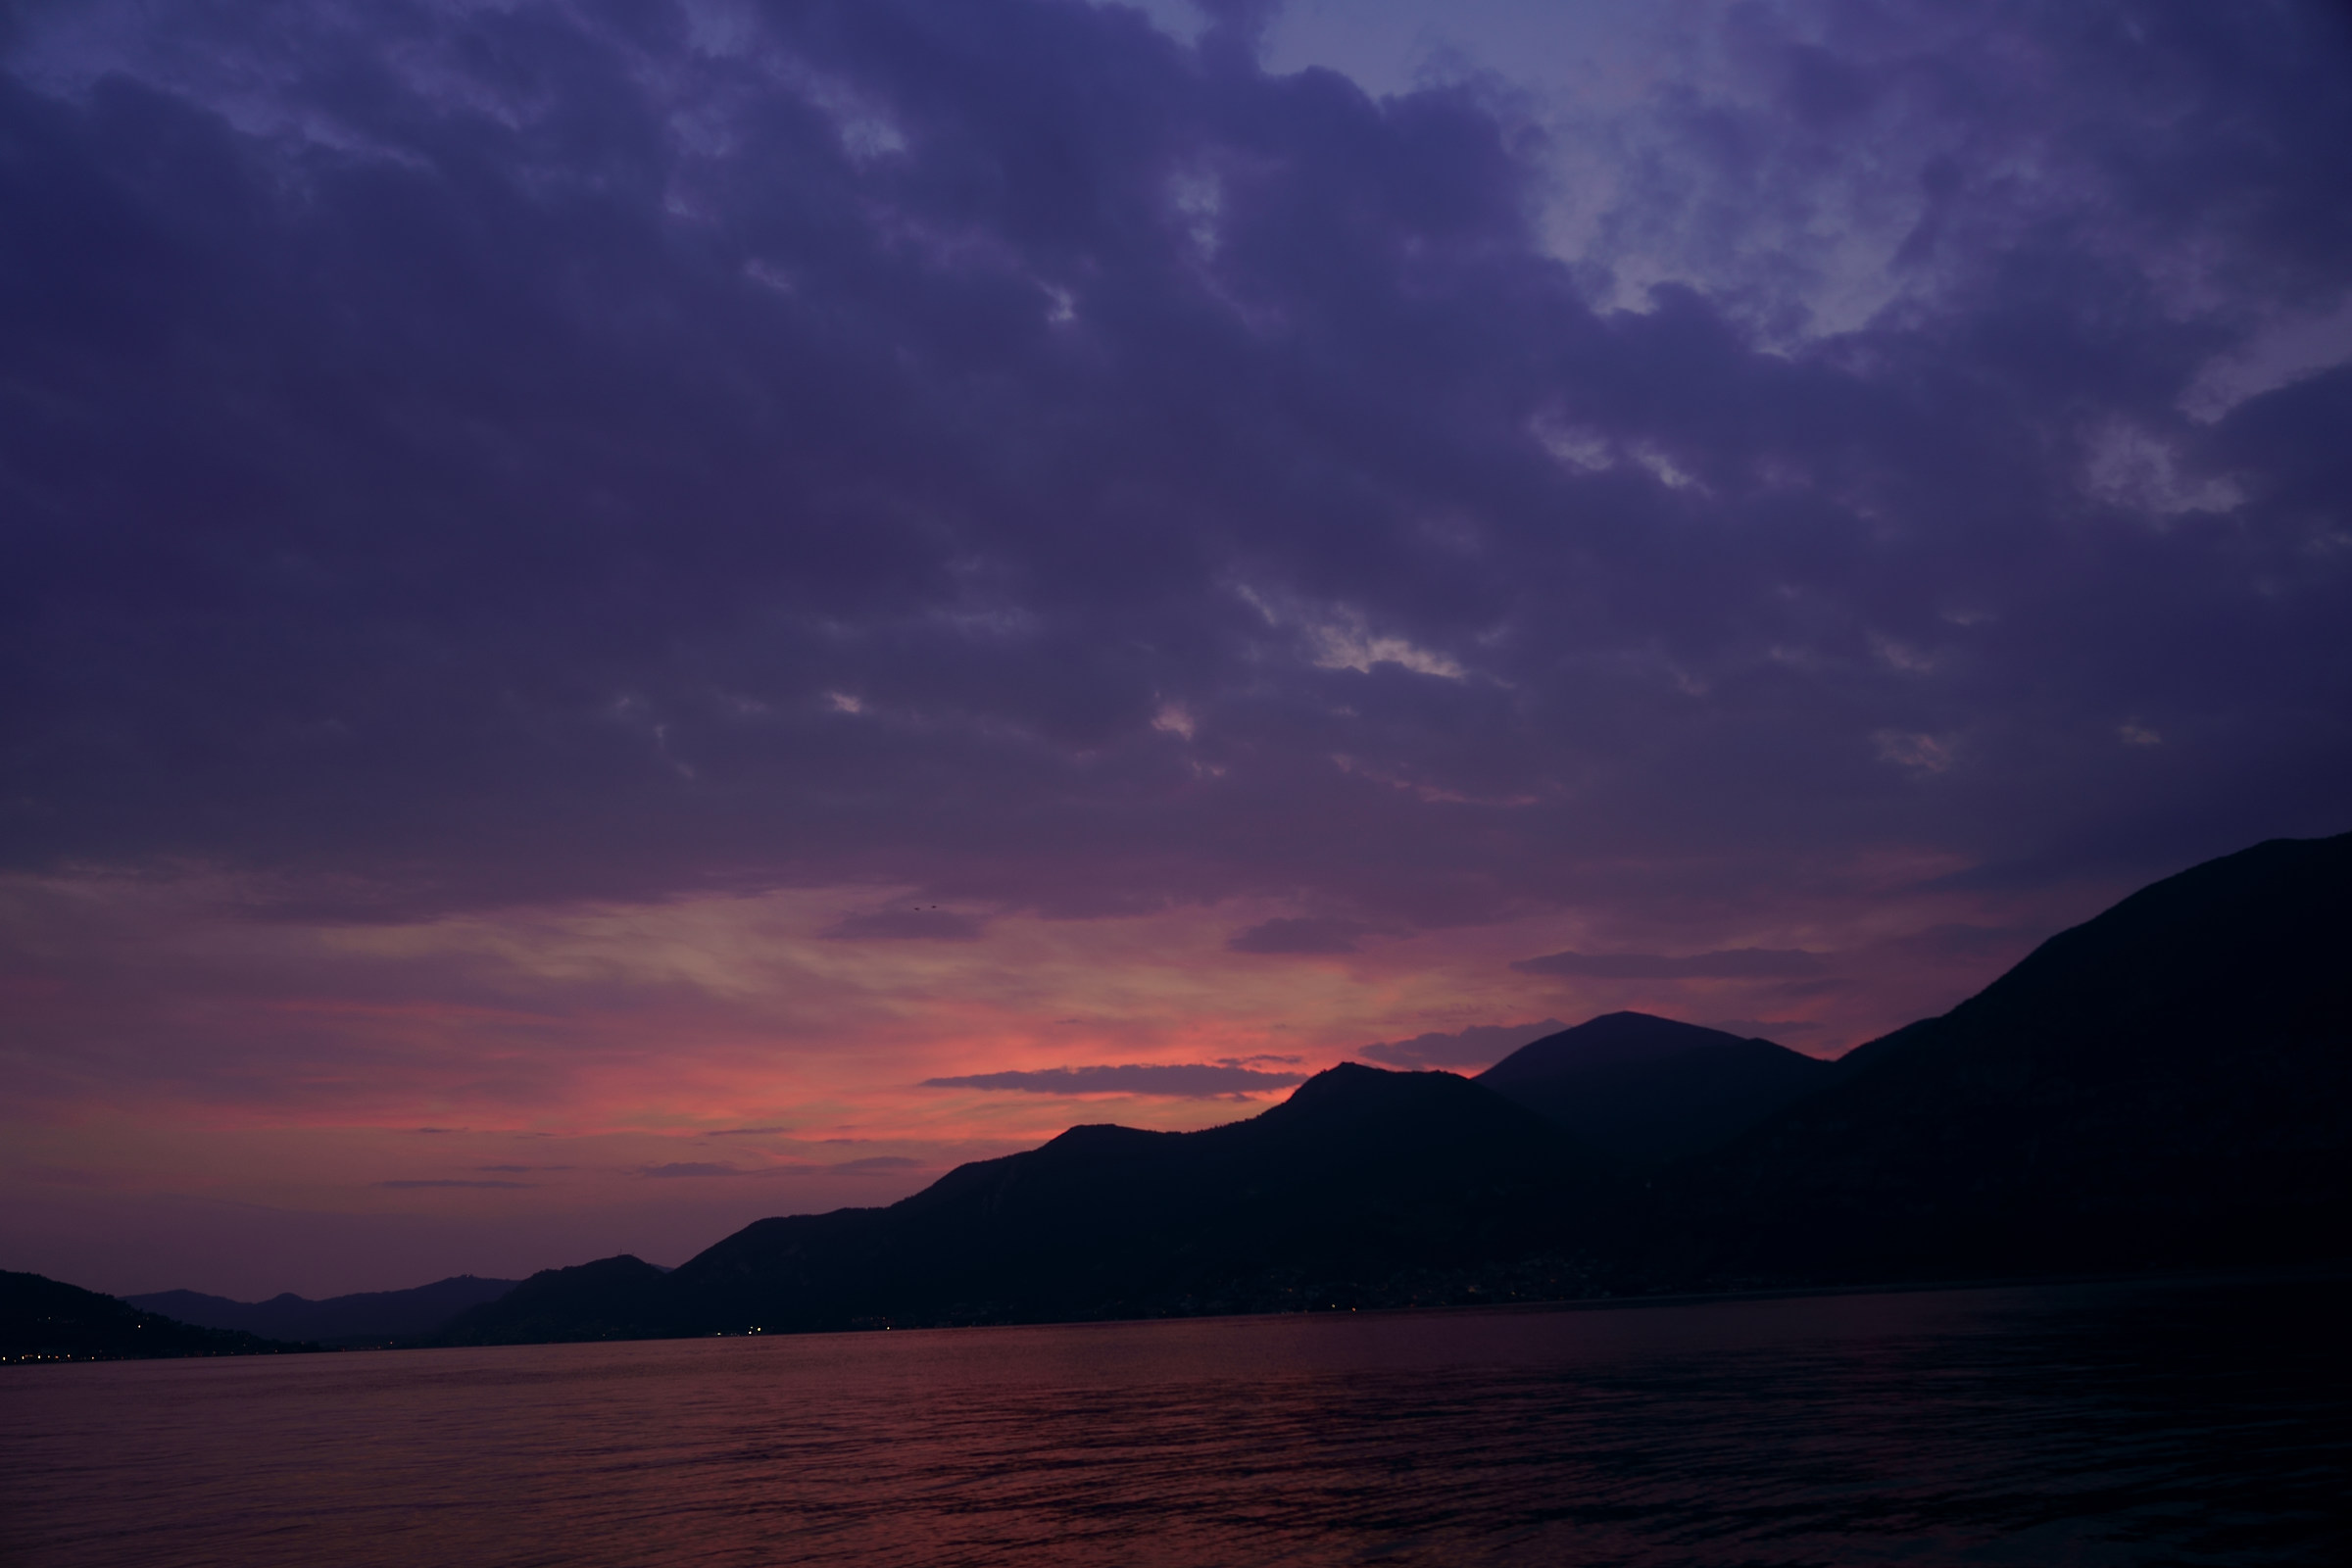 Sunset on Lake Iseo...